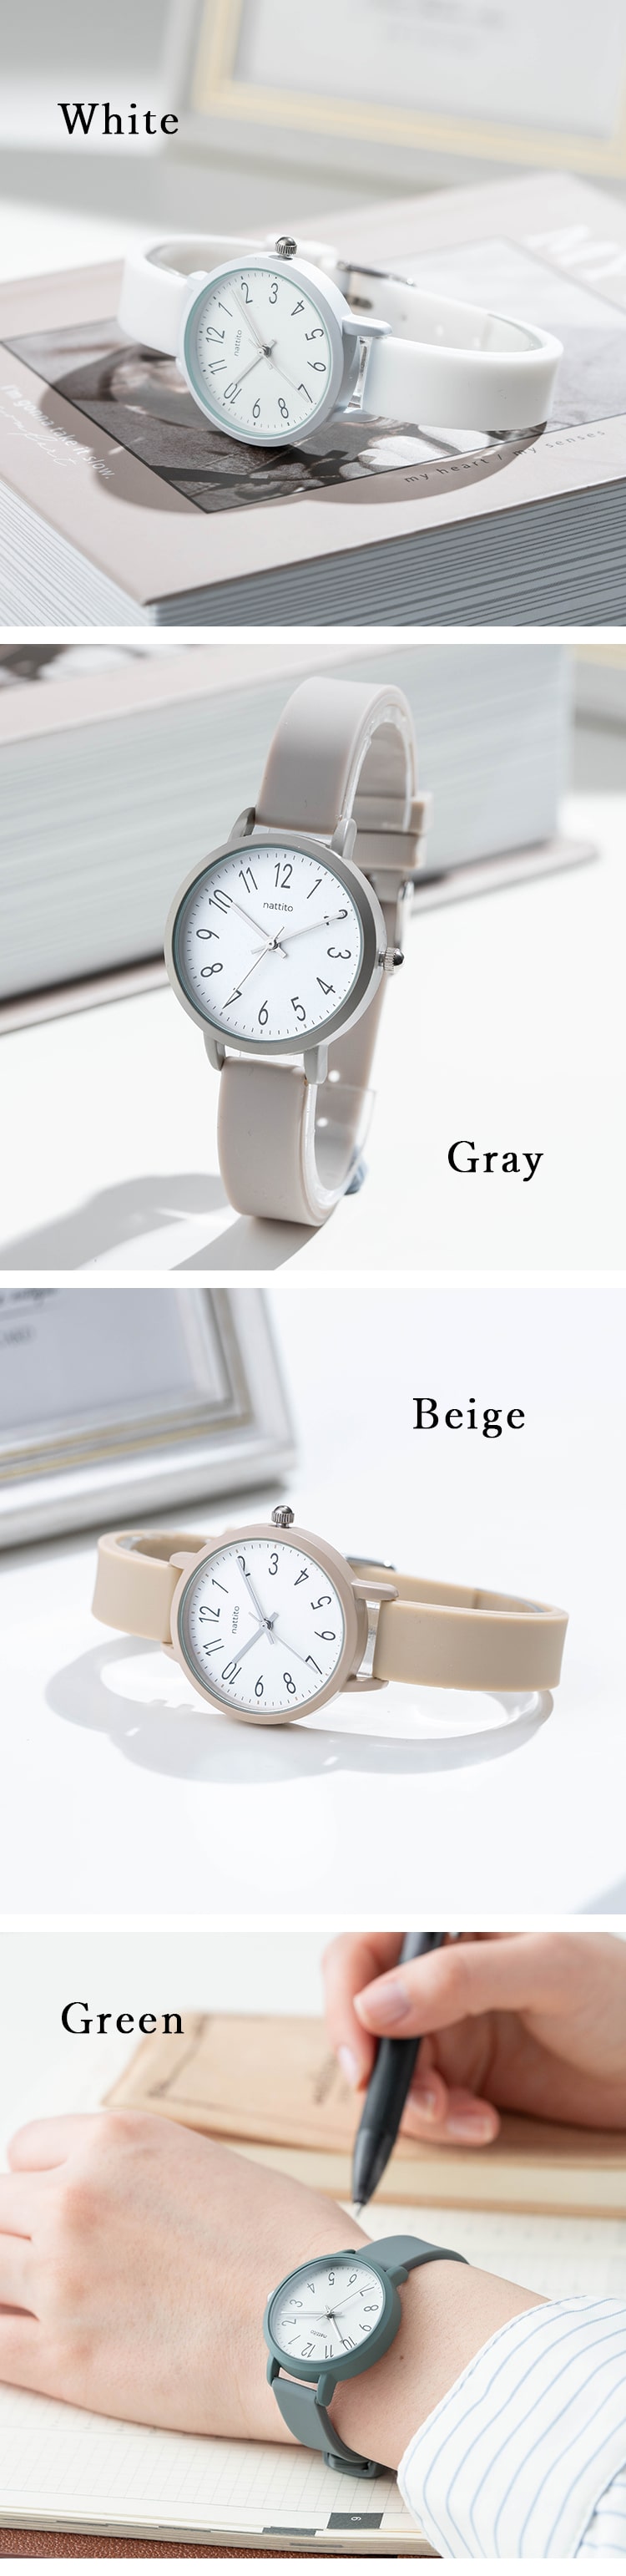 腕時計 レディース ラバー シリコンベルト ウォッチ ブランド カジュアル シンプル かわいい おしゃれ 大人 見やすい 仕事 通勤 通学  日本製ムーブメント プレゼント 母の日 ギフト 女性 1年間のメーカー保証付 | 腕時計